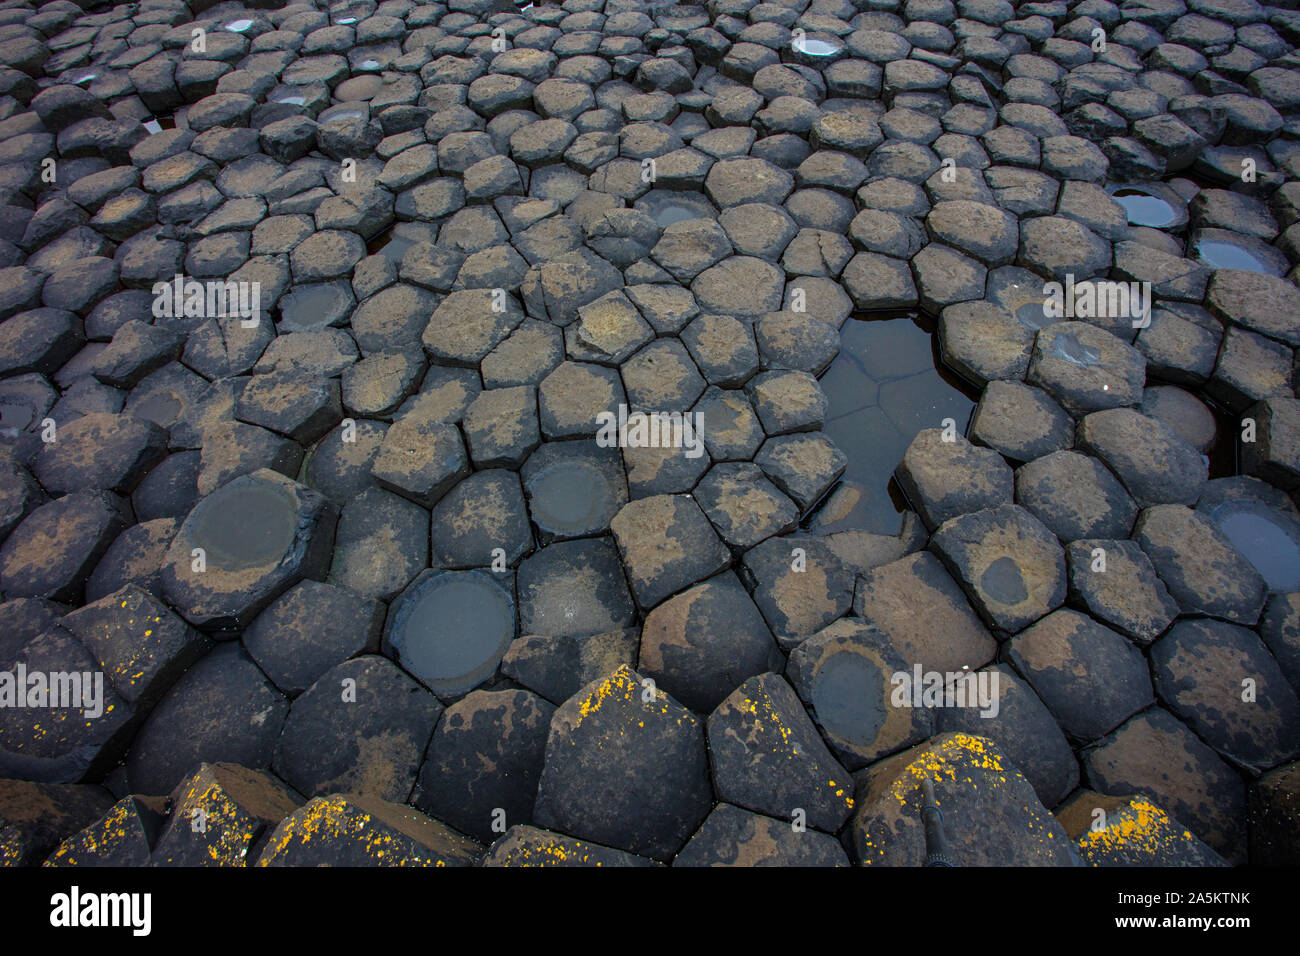 Giant's Causeway, basaltsäulen Spalten, Ergebnis einer alten vulkanischen Spalte Eruption, Nordirland, Großbritannien, Weltkulturerbe Stockfoto